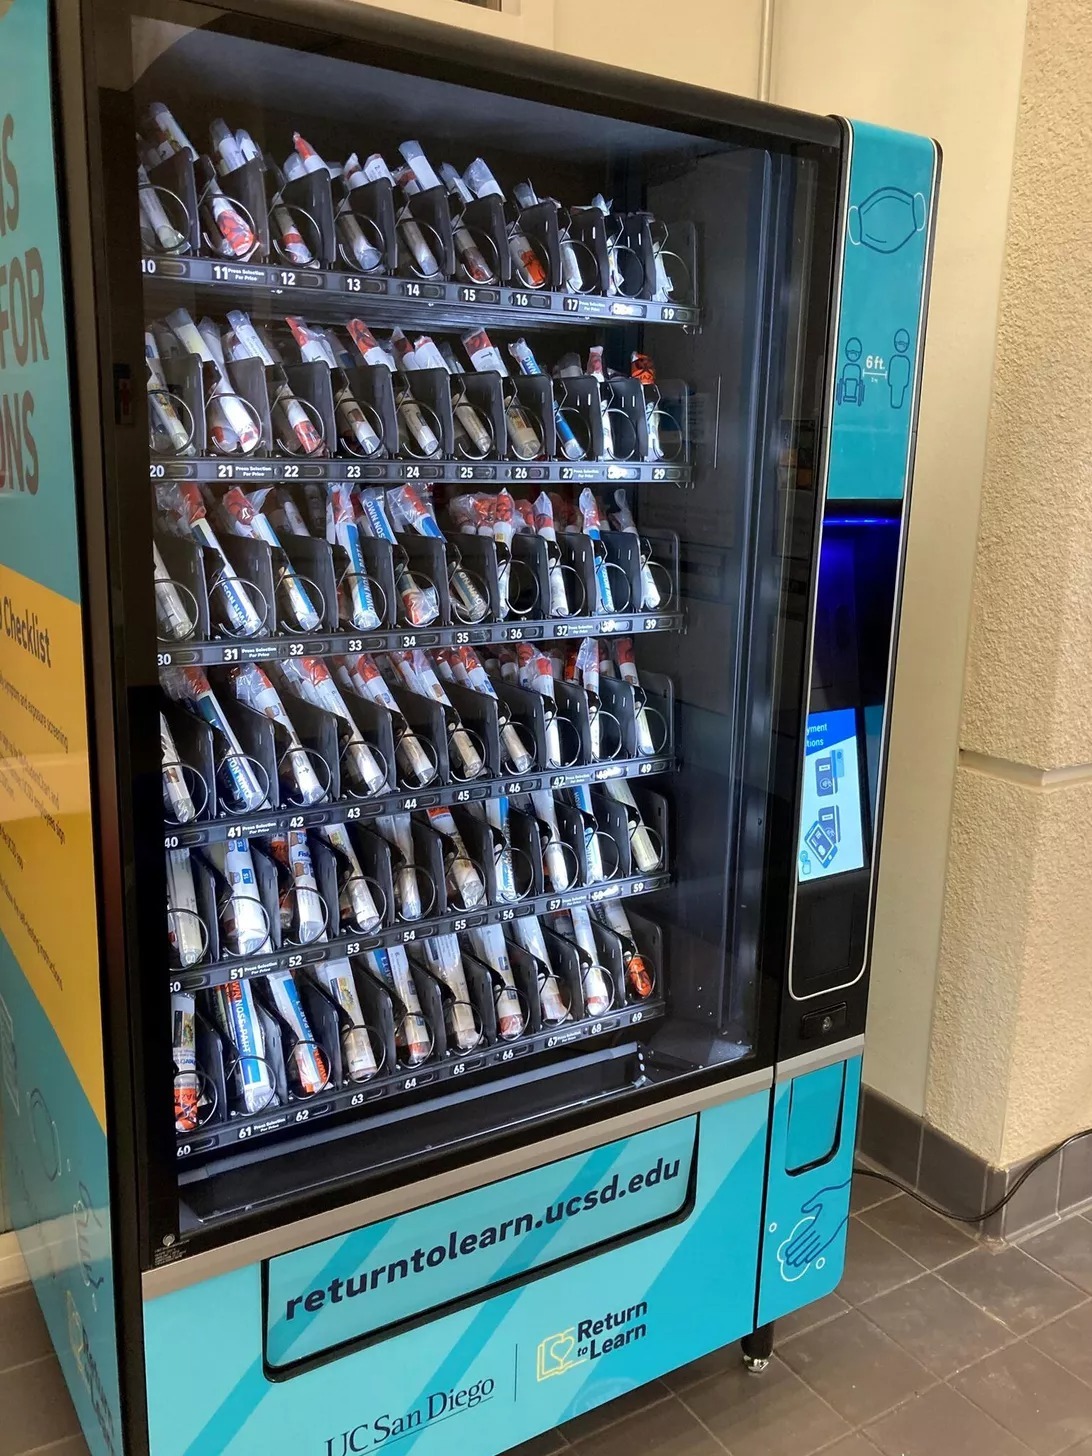 コロナ検査キットを自販機で無料提供 カリフォルニア大学サンディエゴ校で Cnet Japan